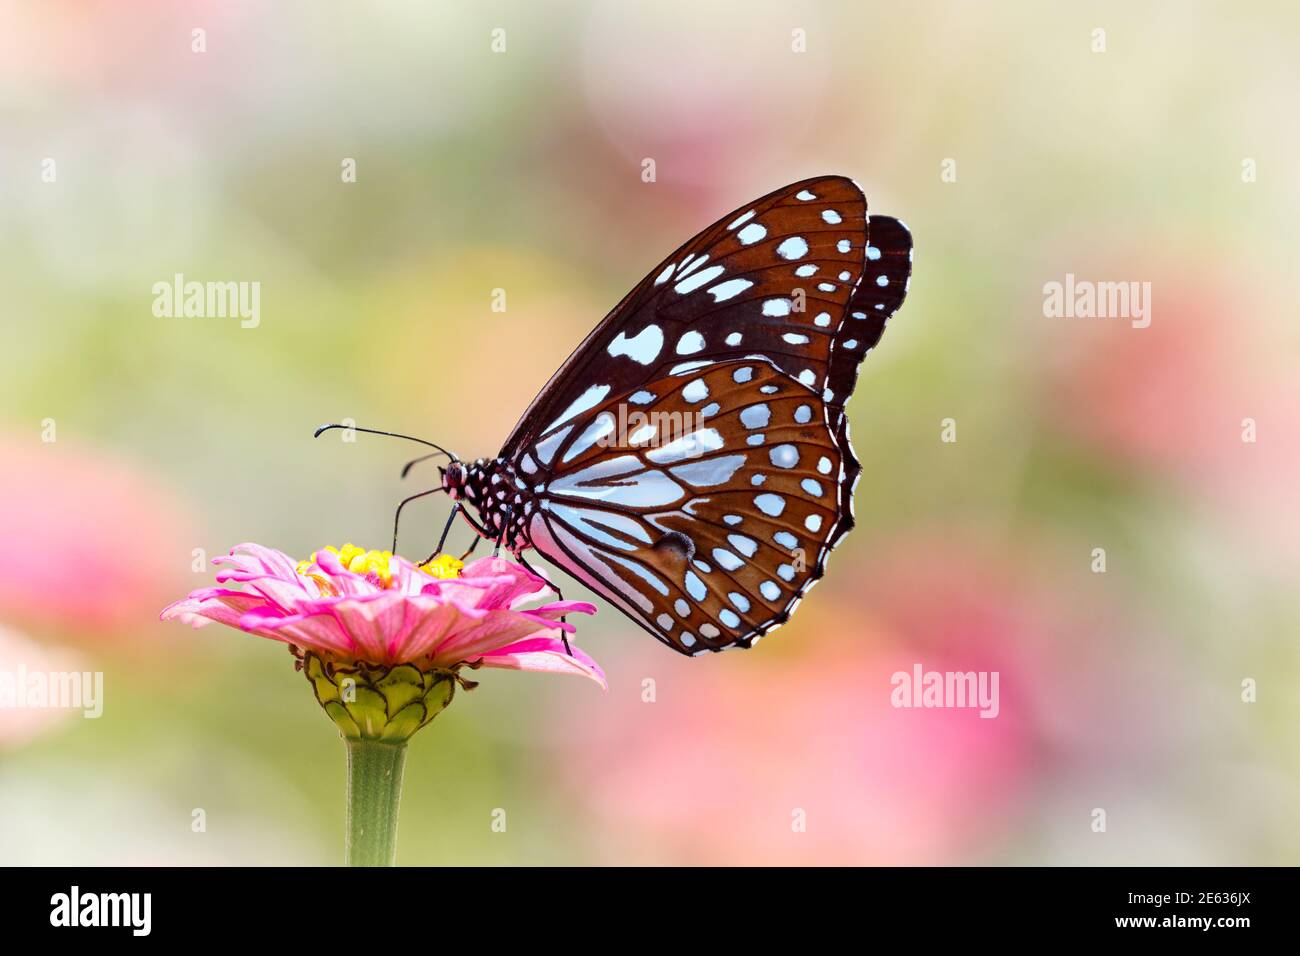 Mariposa Tigre azul o Tirumala limniace en flor de Zinnia rosa con fondo bokeh claro y colorido Foto de stock